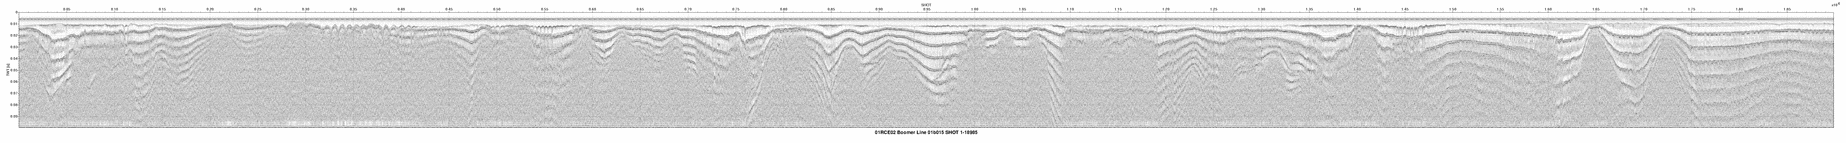 01RCE02-01b015 seismic profile thumbnail